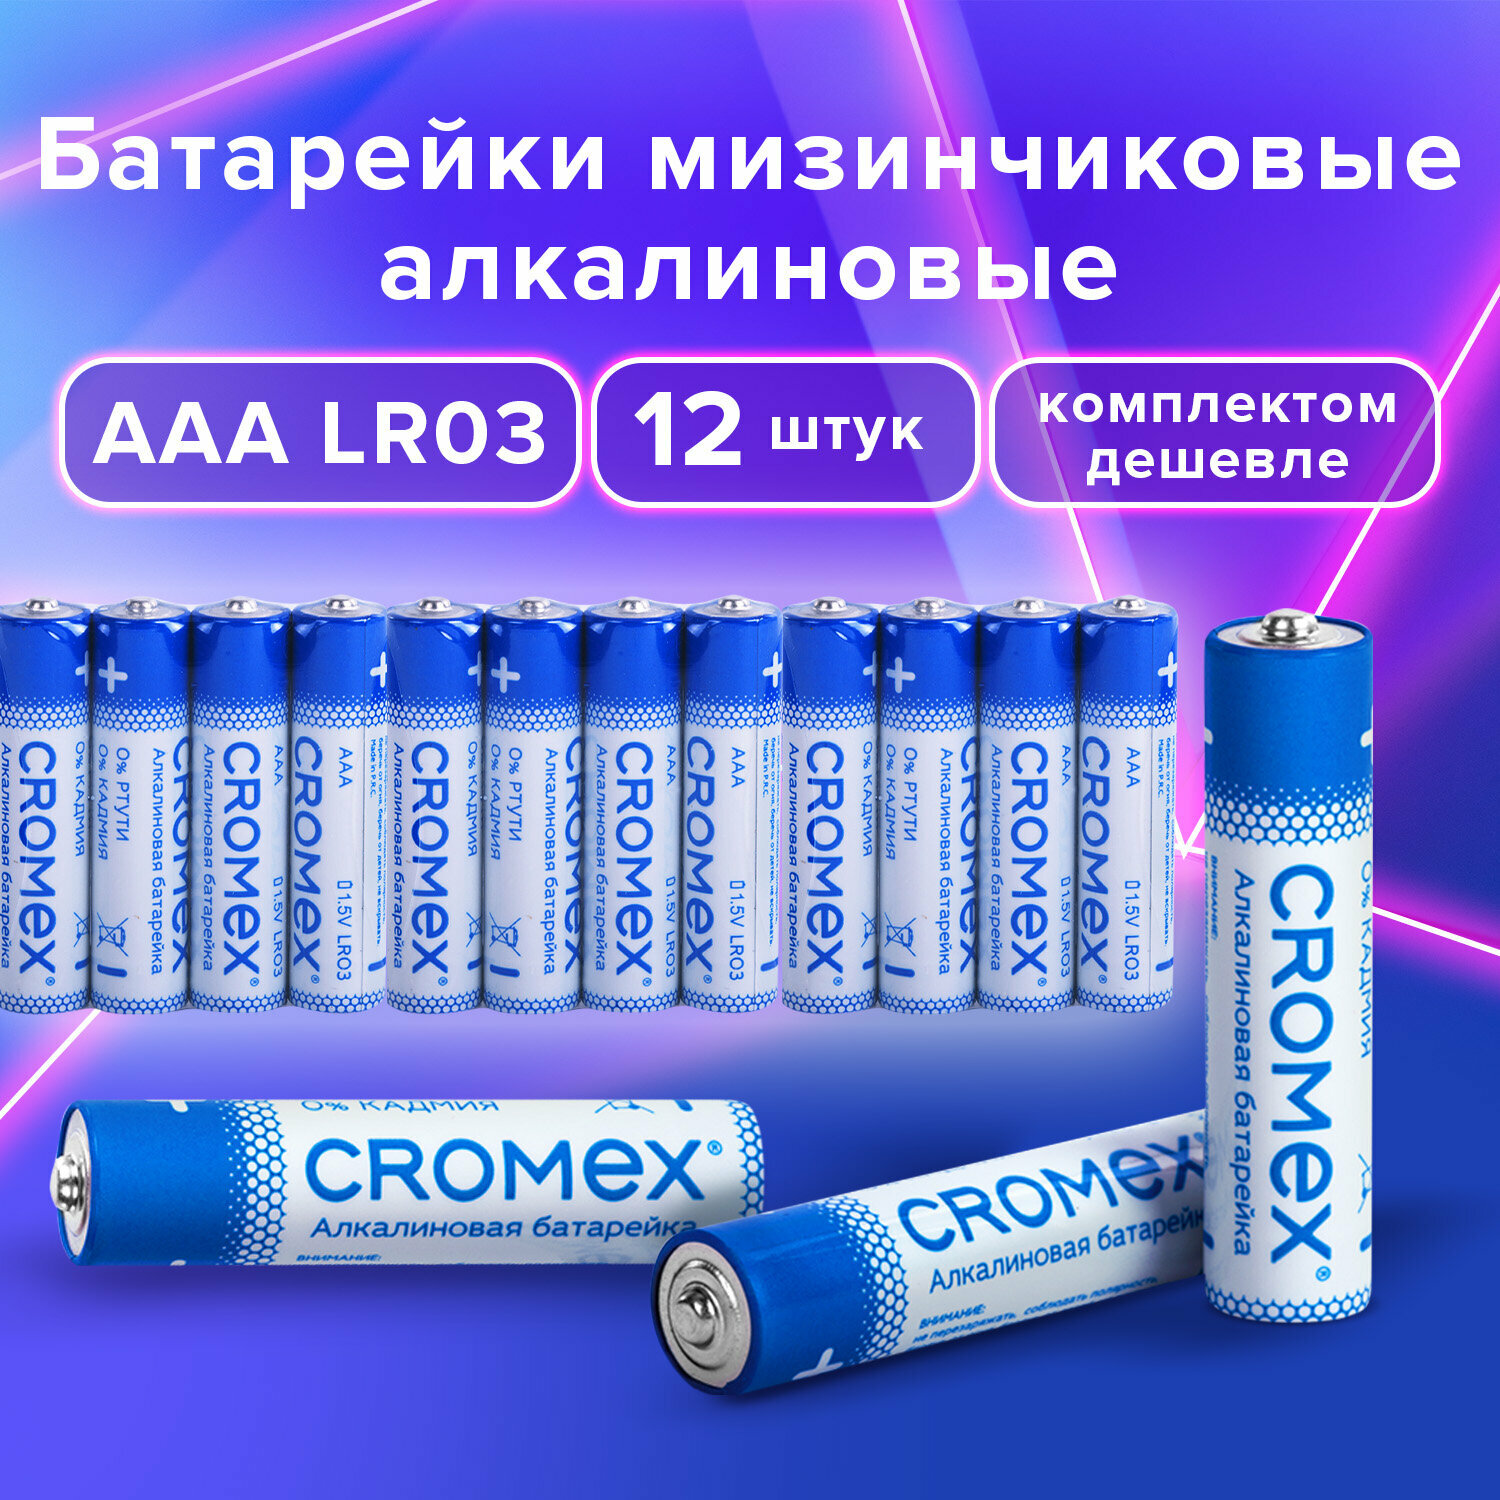 Батарейки мизинчиковые AAA алкалиновые набор 12 штук для весов, часов, фонарика, пульта LR03 24A, спайка, Cromex Alkaline, 456259